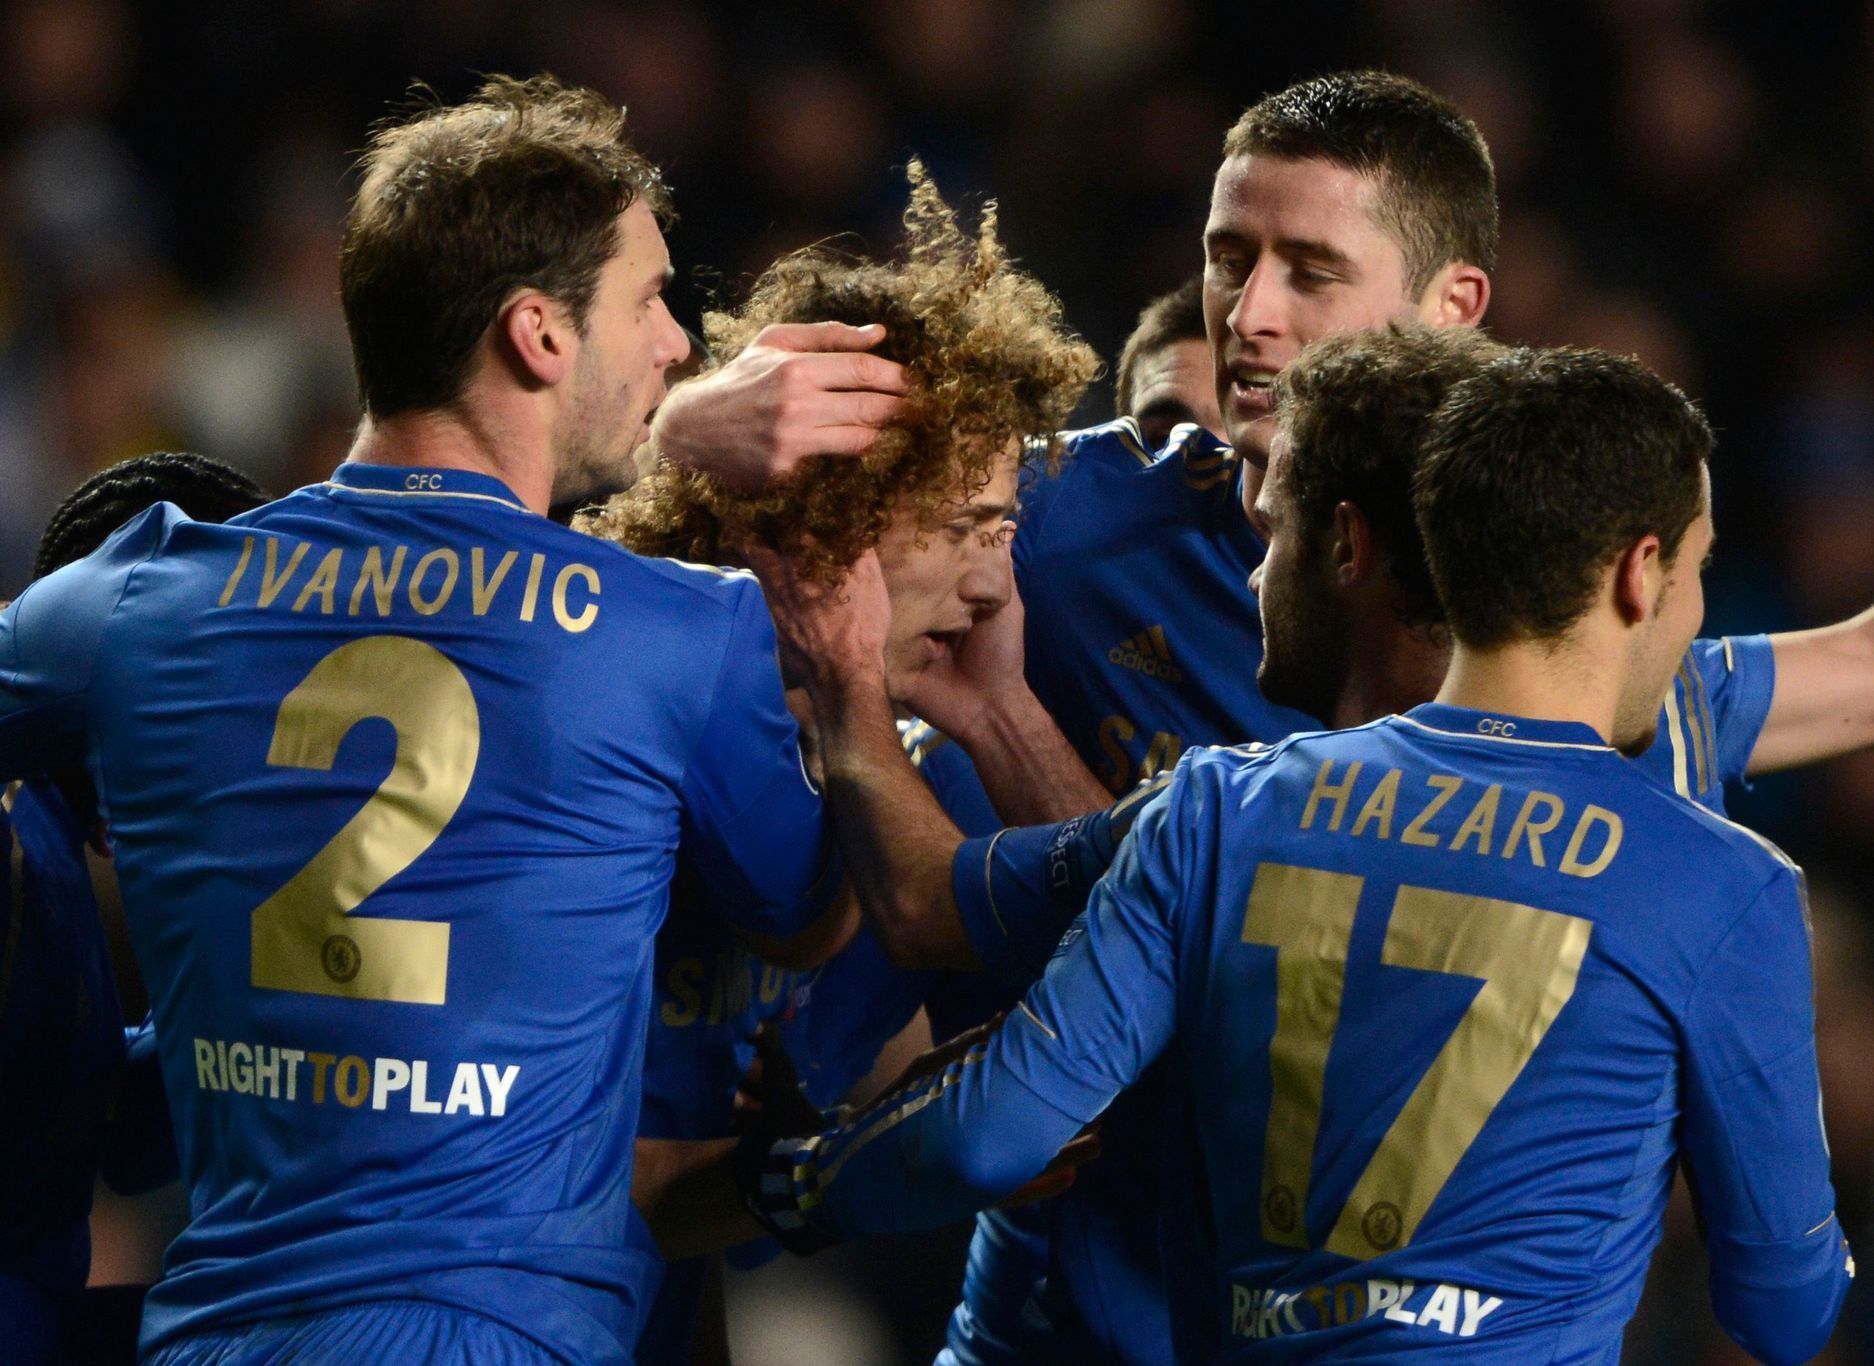 Chelsea - Nordsjaelland, Liga mistrů (David Luiz, Hazard, Ivanovič)